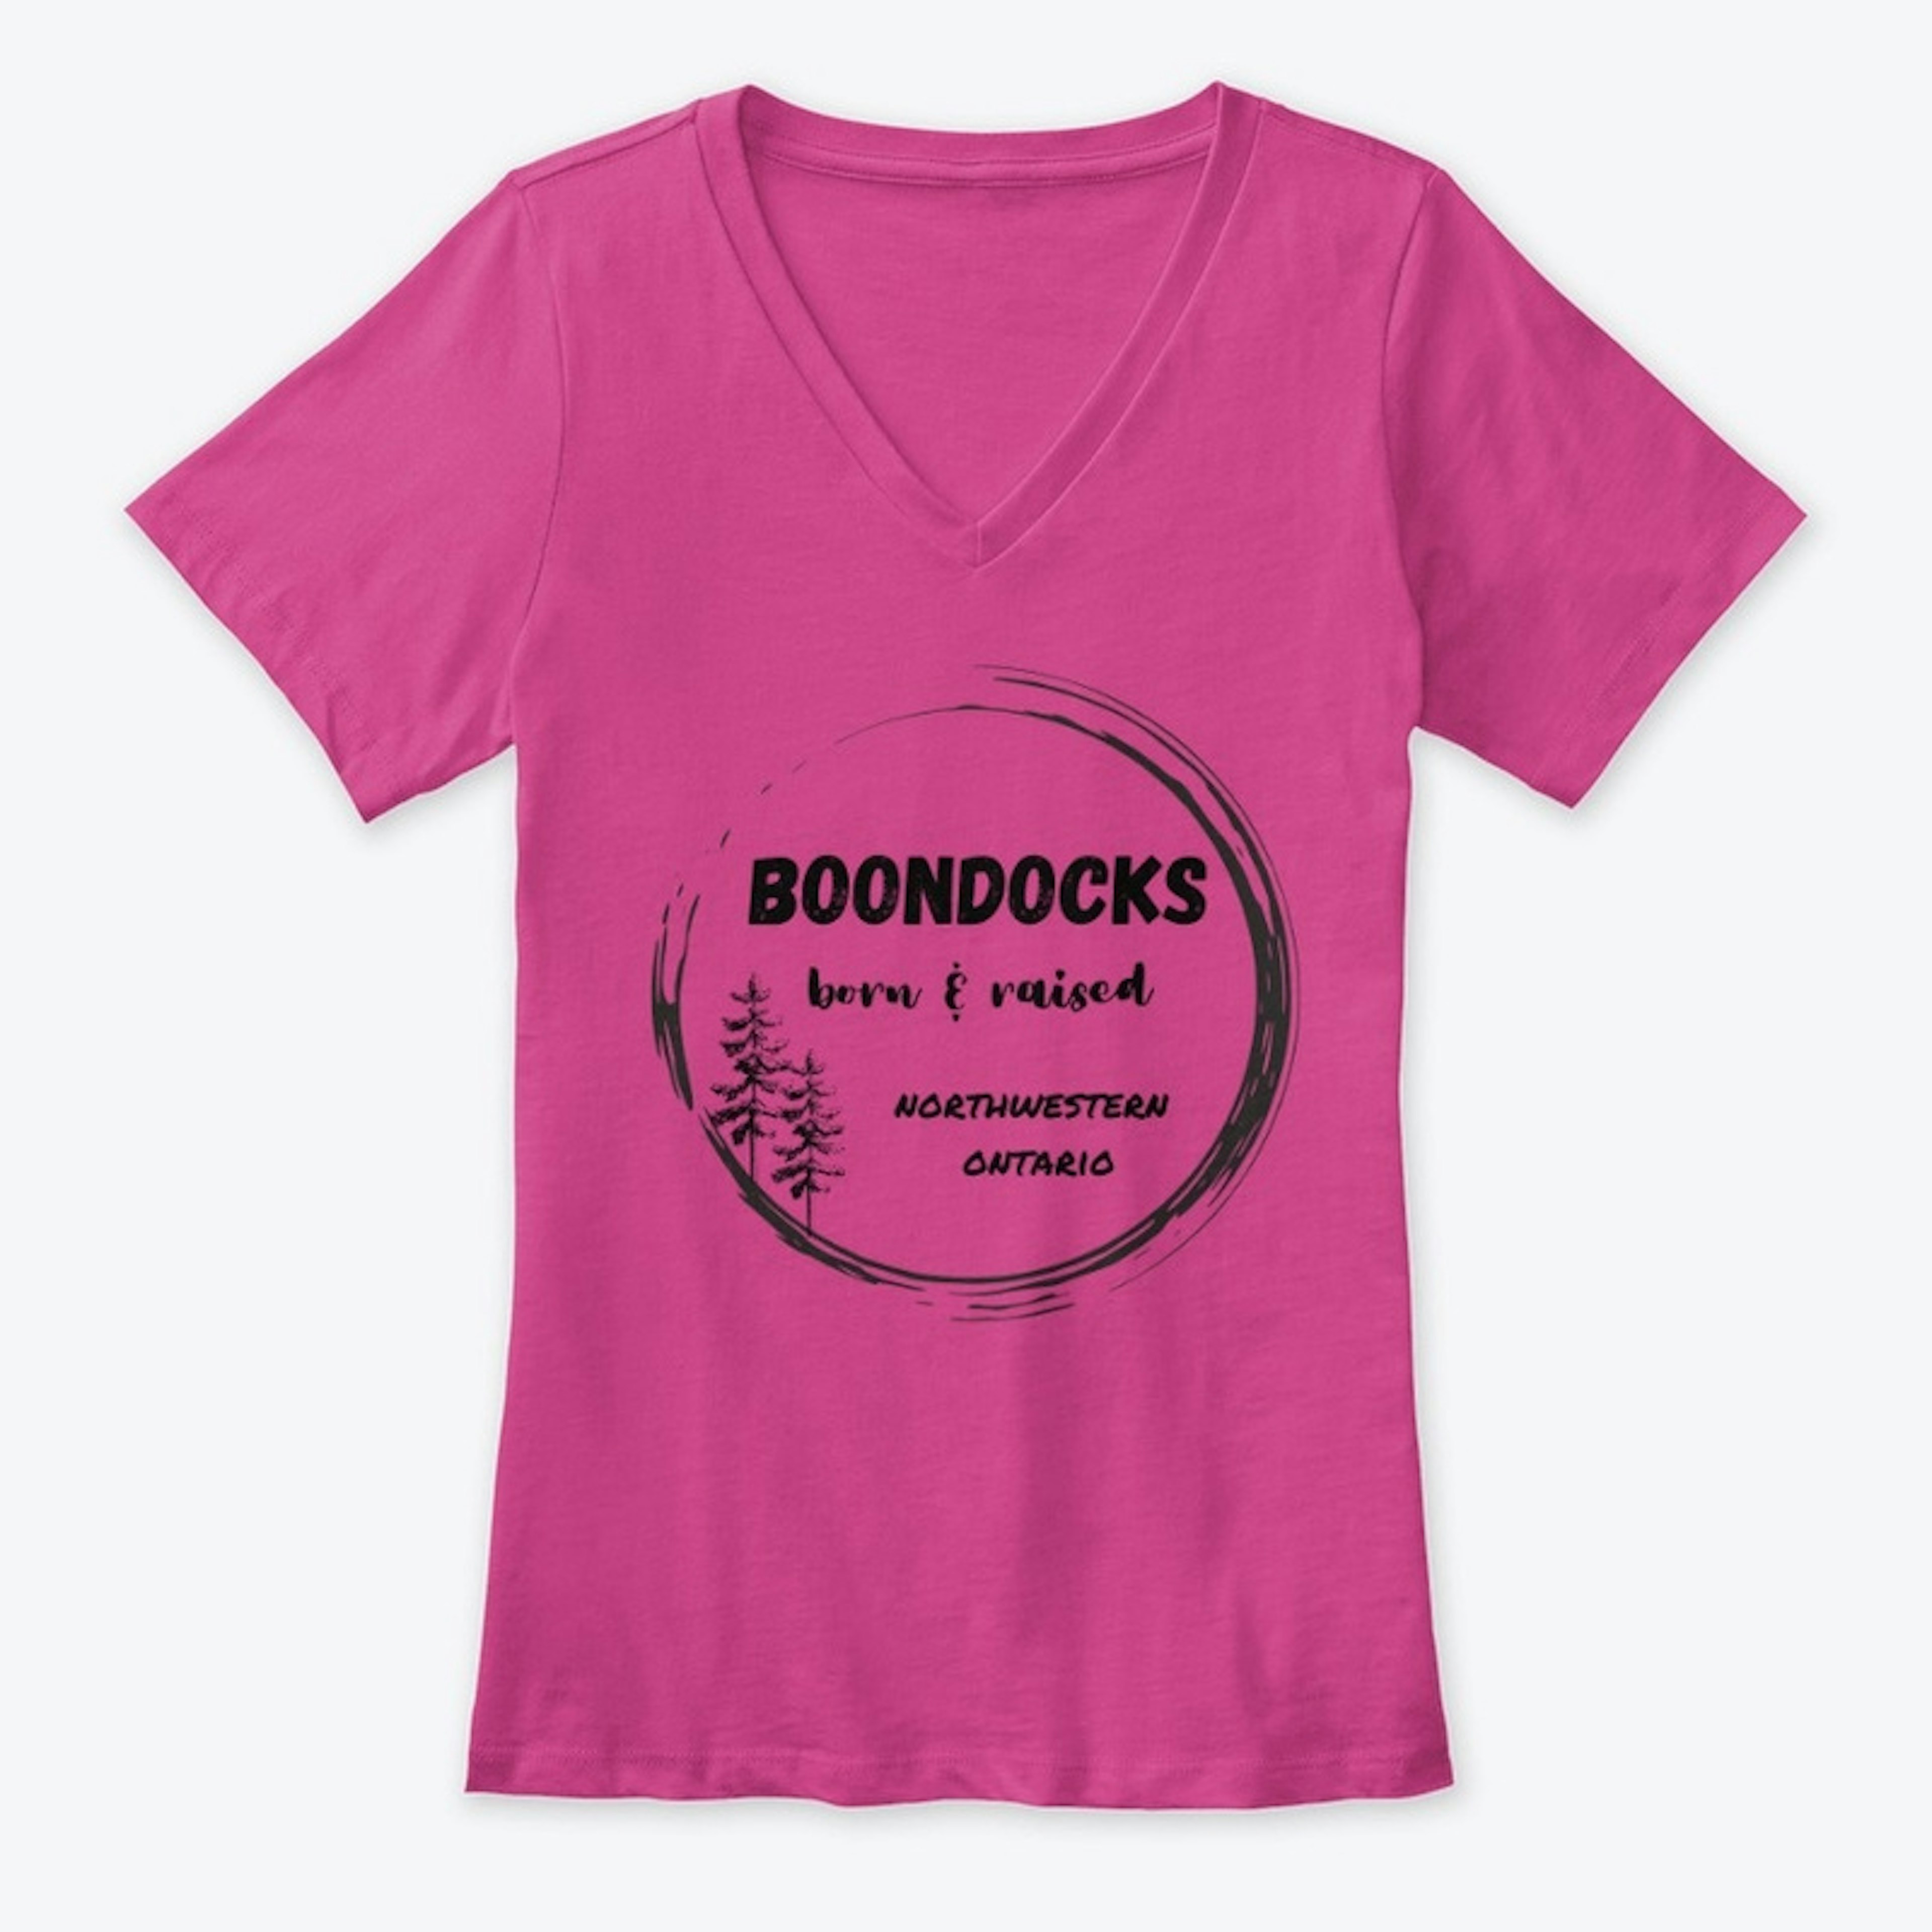 Boondocks born and raised